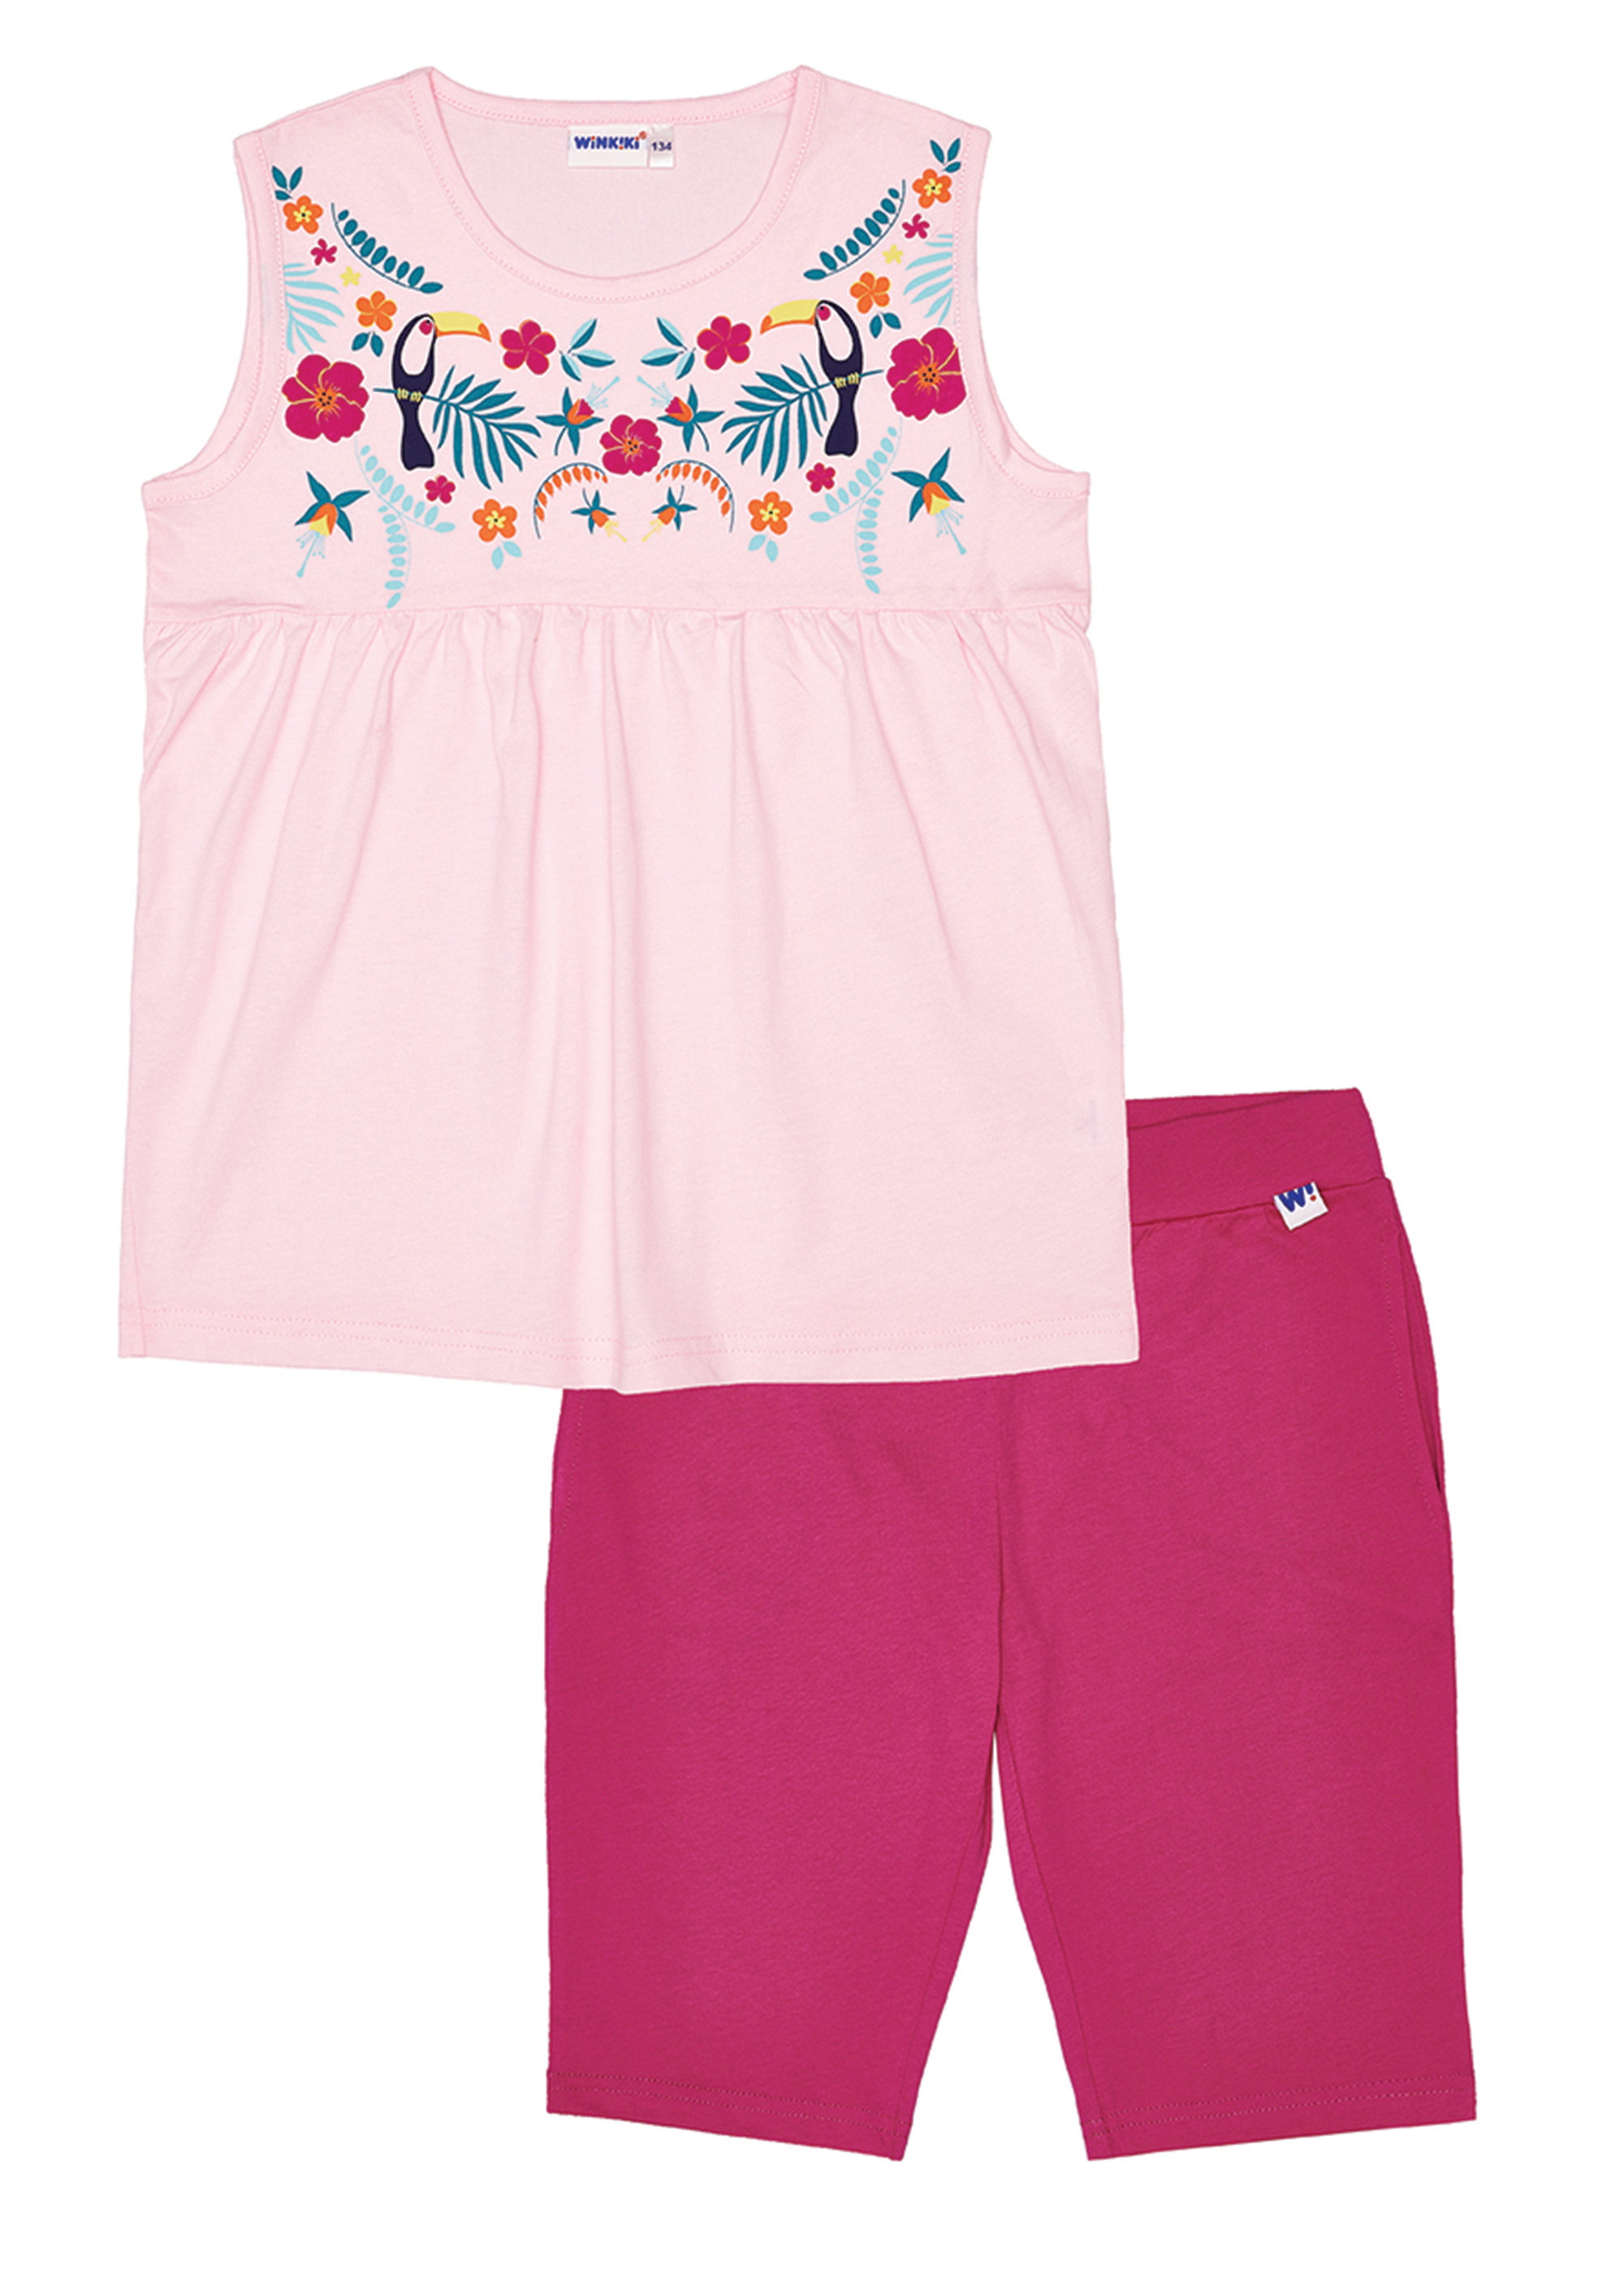 Dívčí pyžamo - Winkiki WJG 91170, růžová Barva: Růžová, Velikost: 146